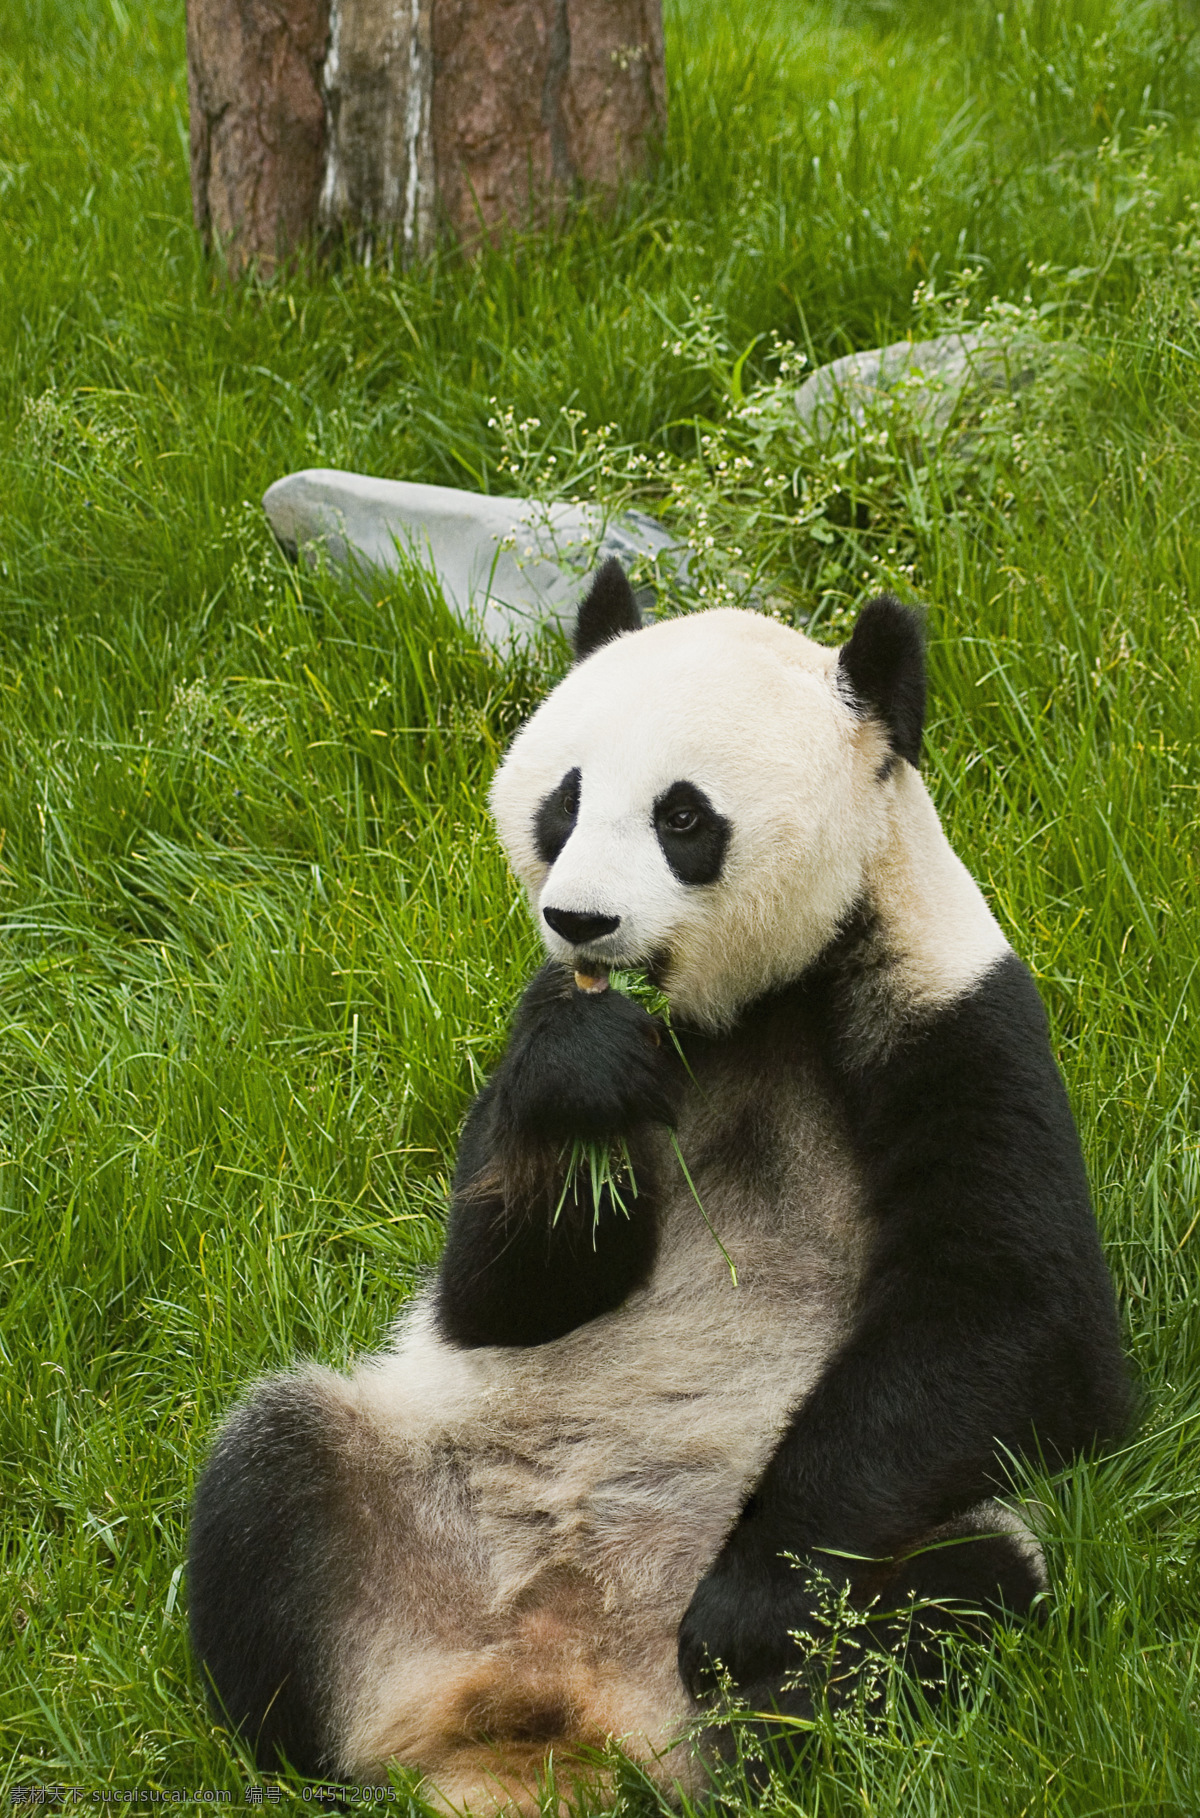 草地 上 吃 草 熊猫 野生动物 生物世界 高清图片 jpg图库 摄影图片 竹子 竹叶 国宝 国宝熊猫 猫咪图片